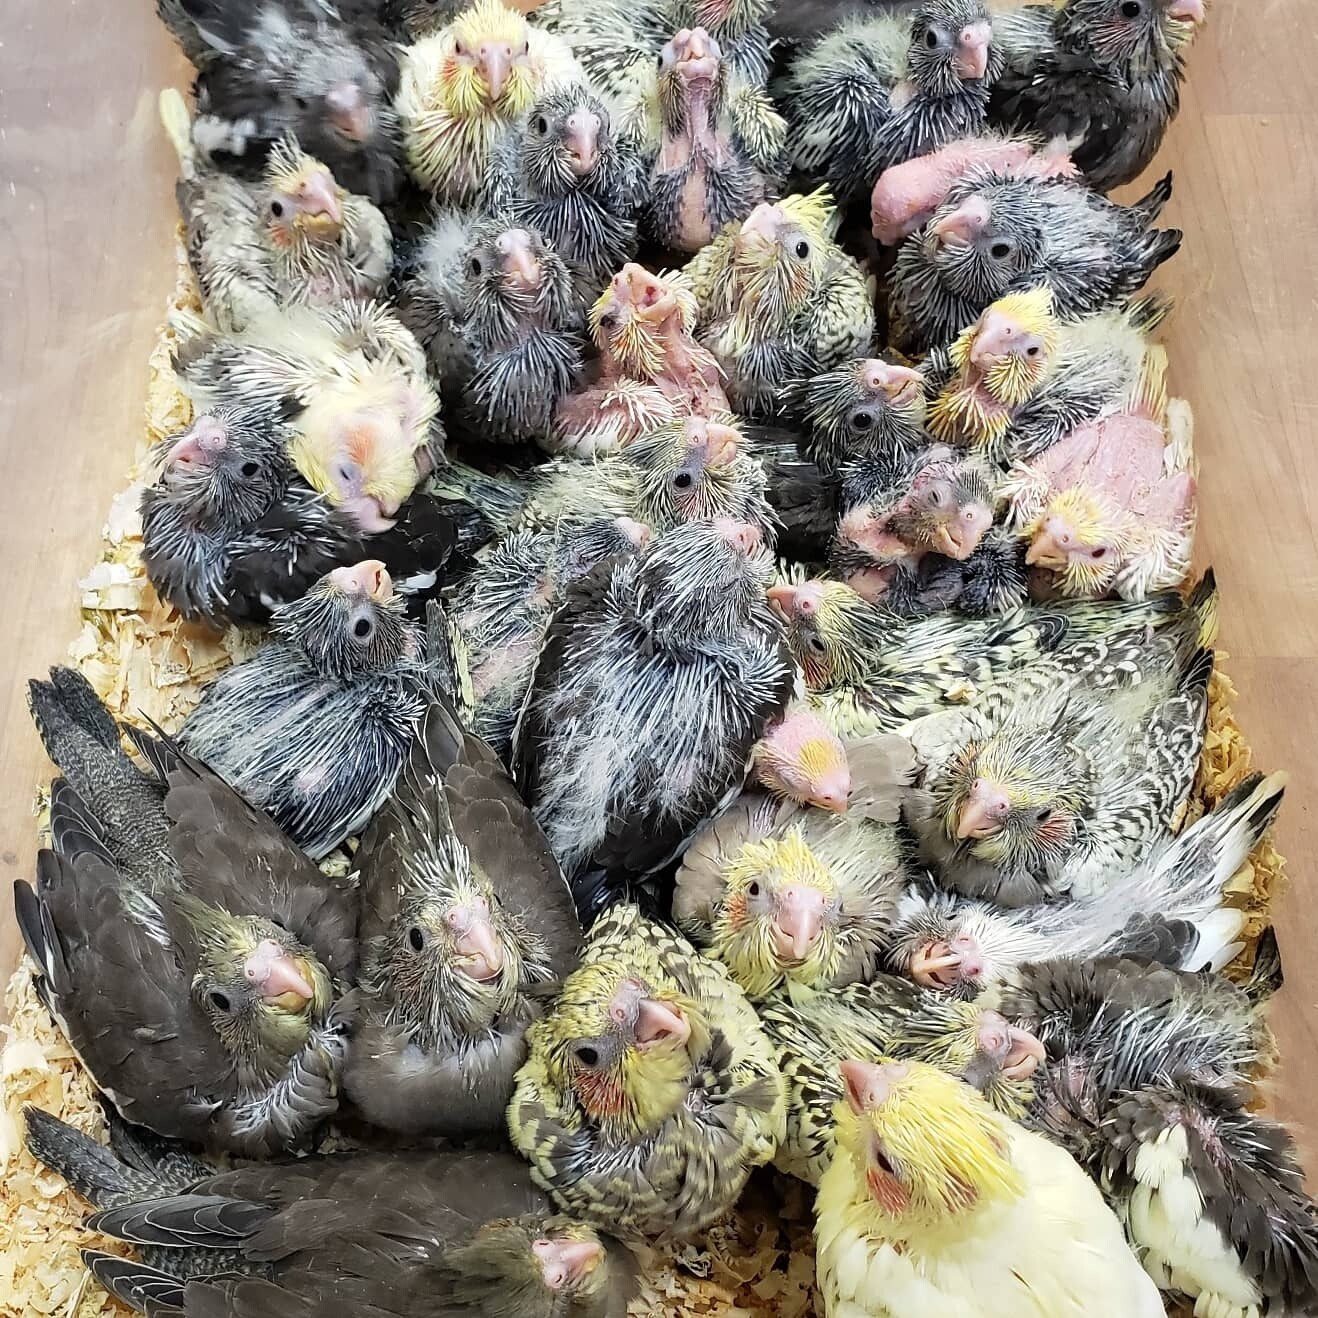 37 baby Cockatiels Unweaned